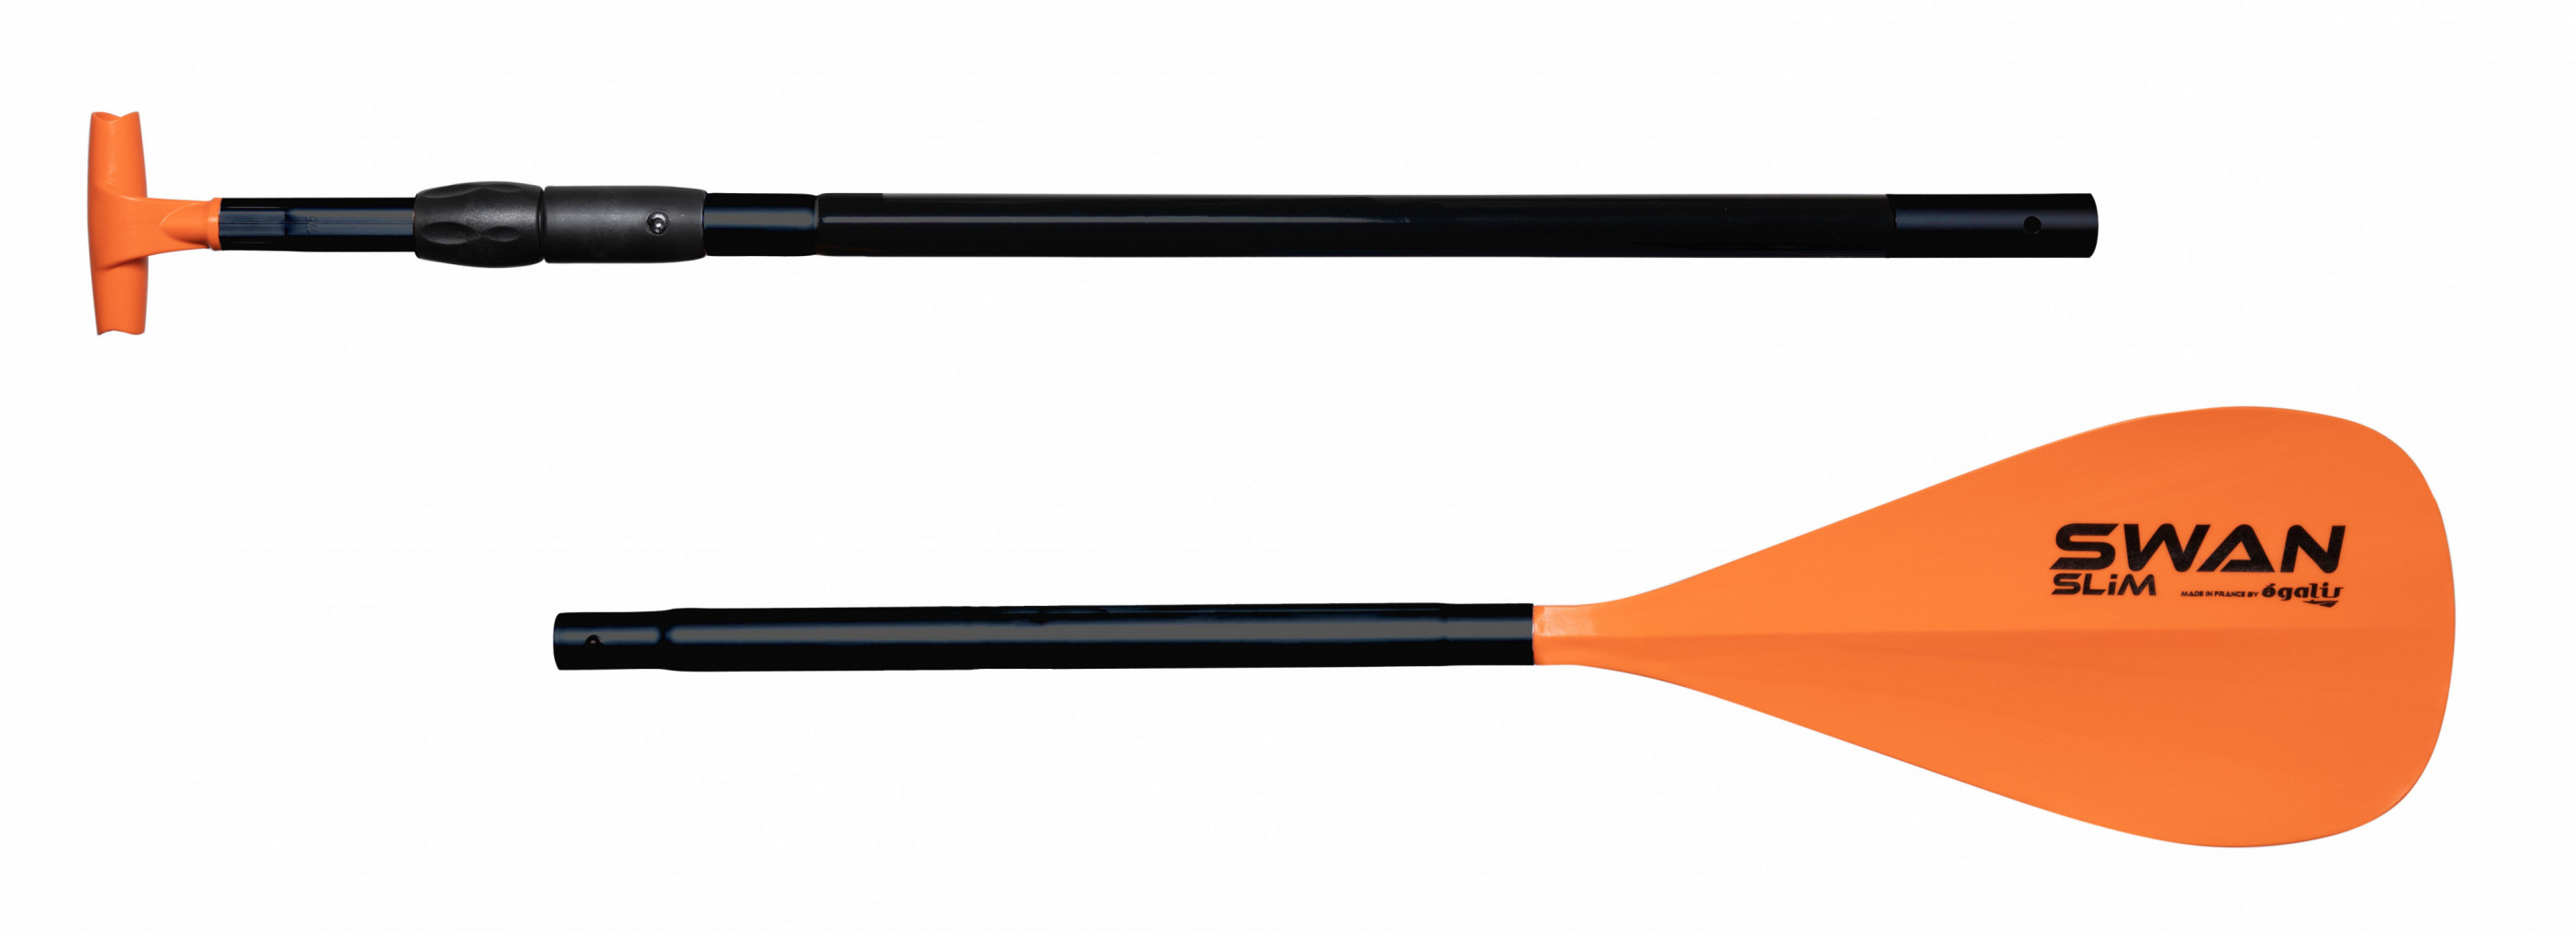 Pagaie SUP Swan Slim Vario télescopique et démontable 170-210 orange